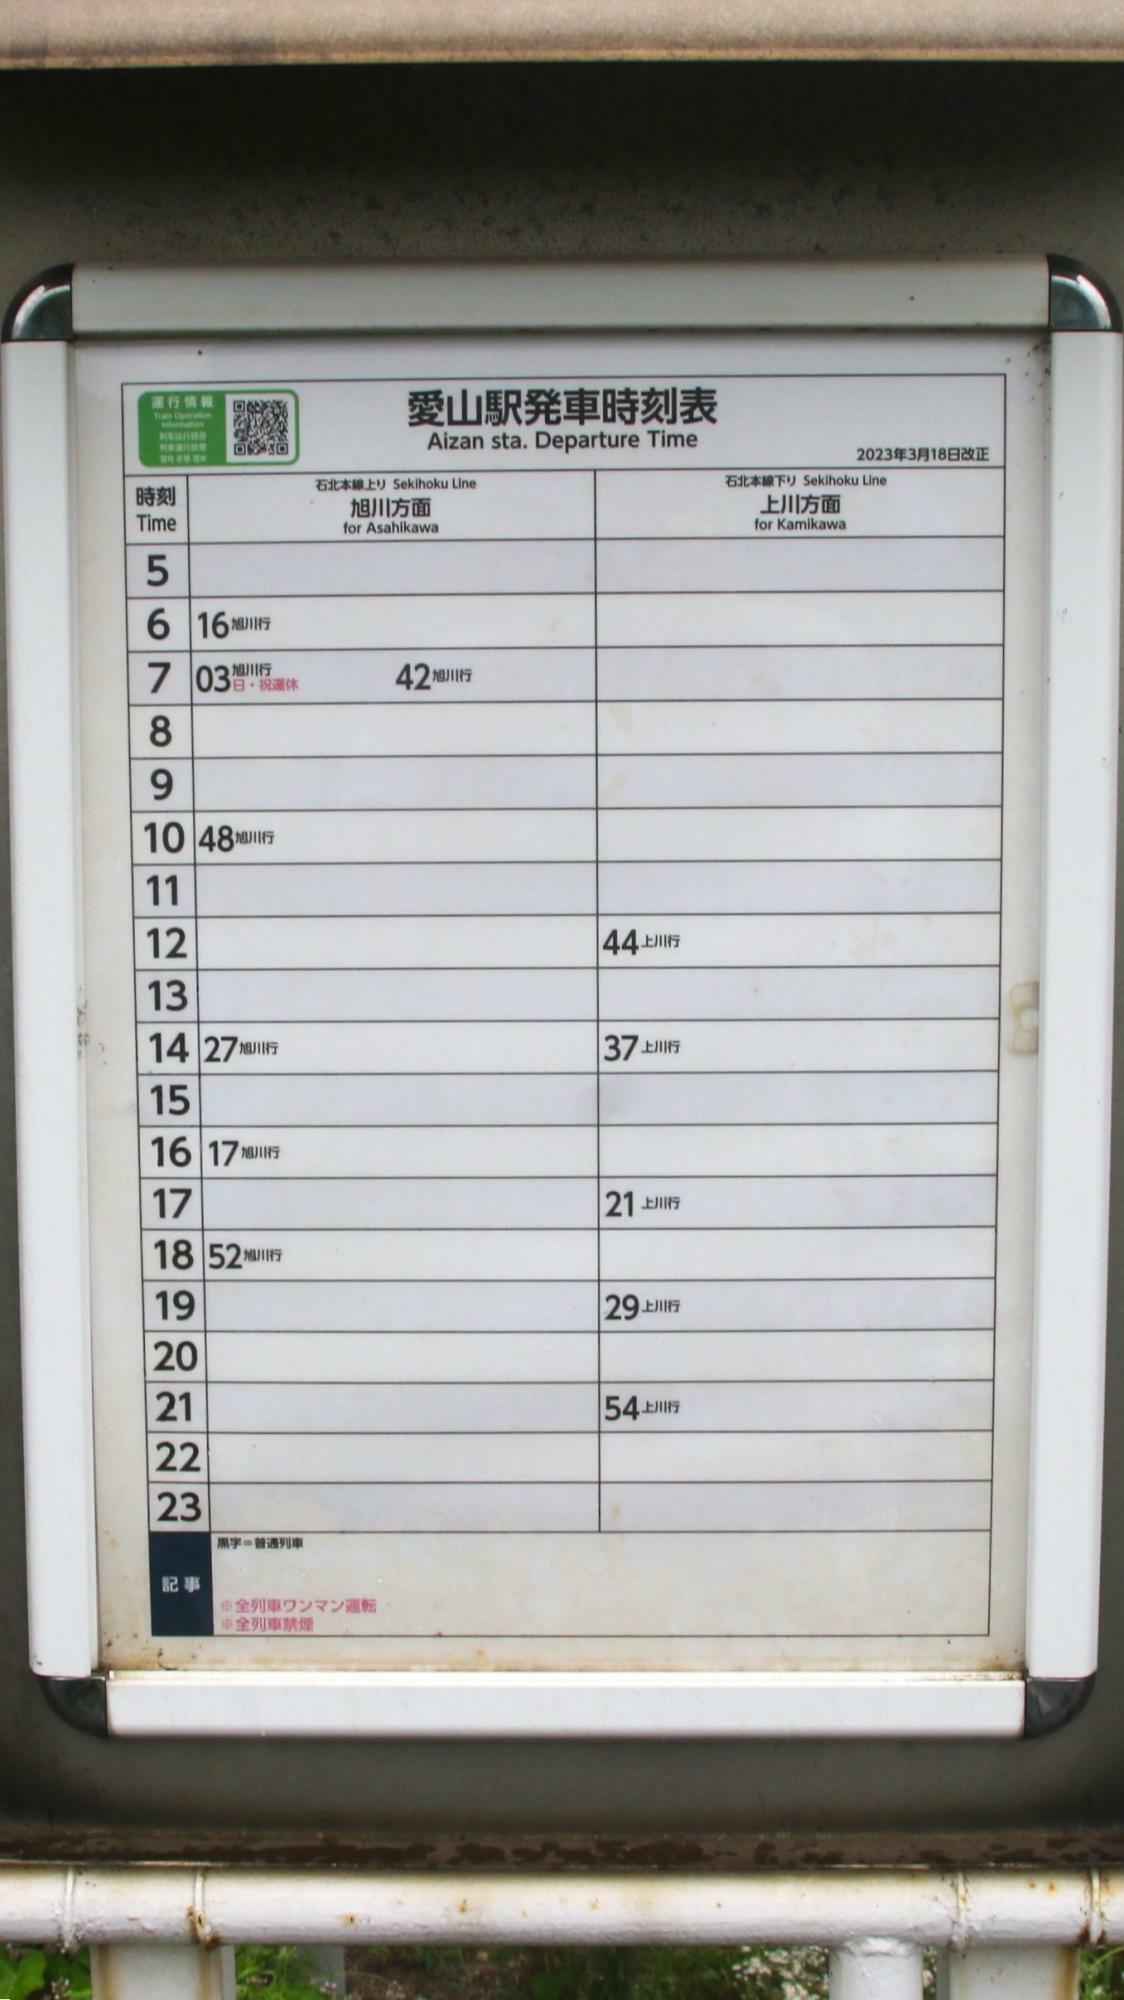 ホームにある発車時刻表